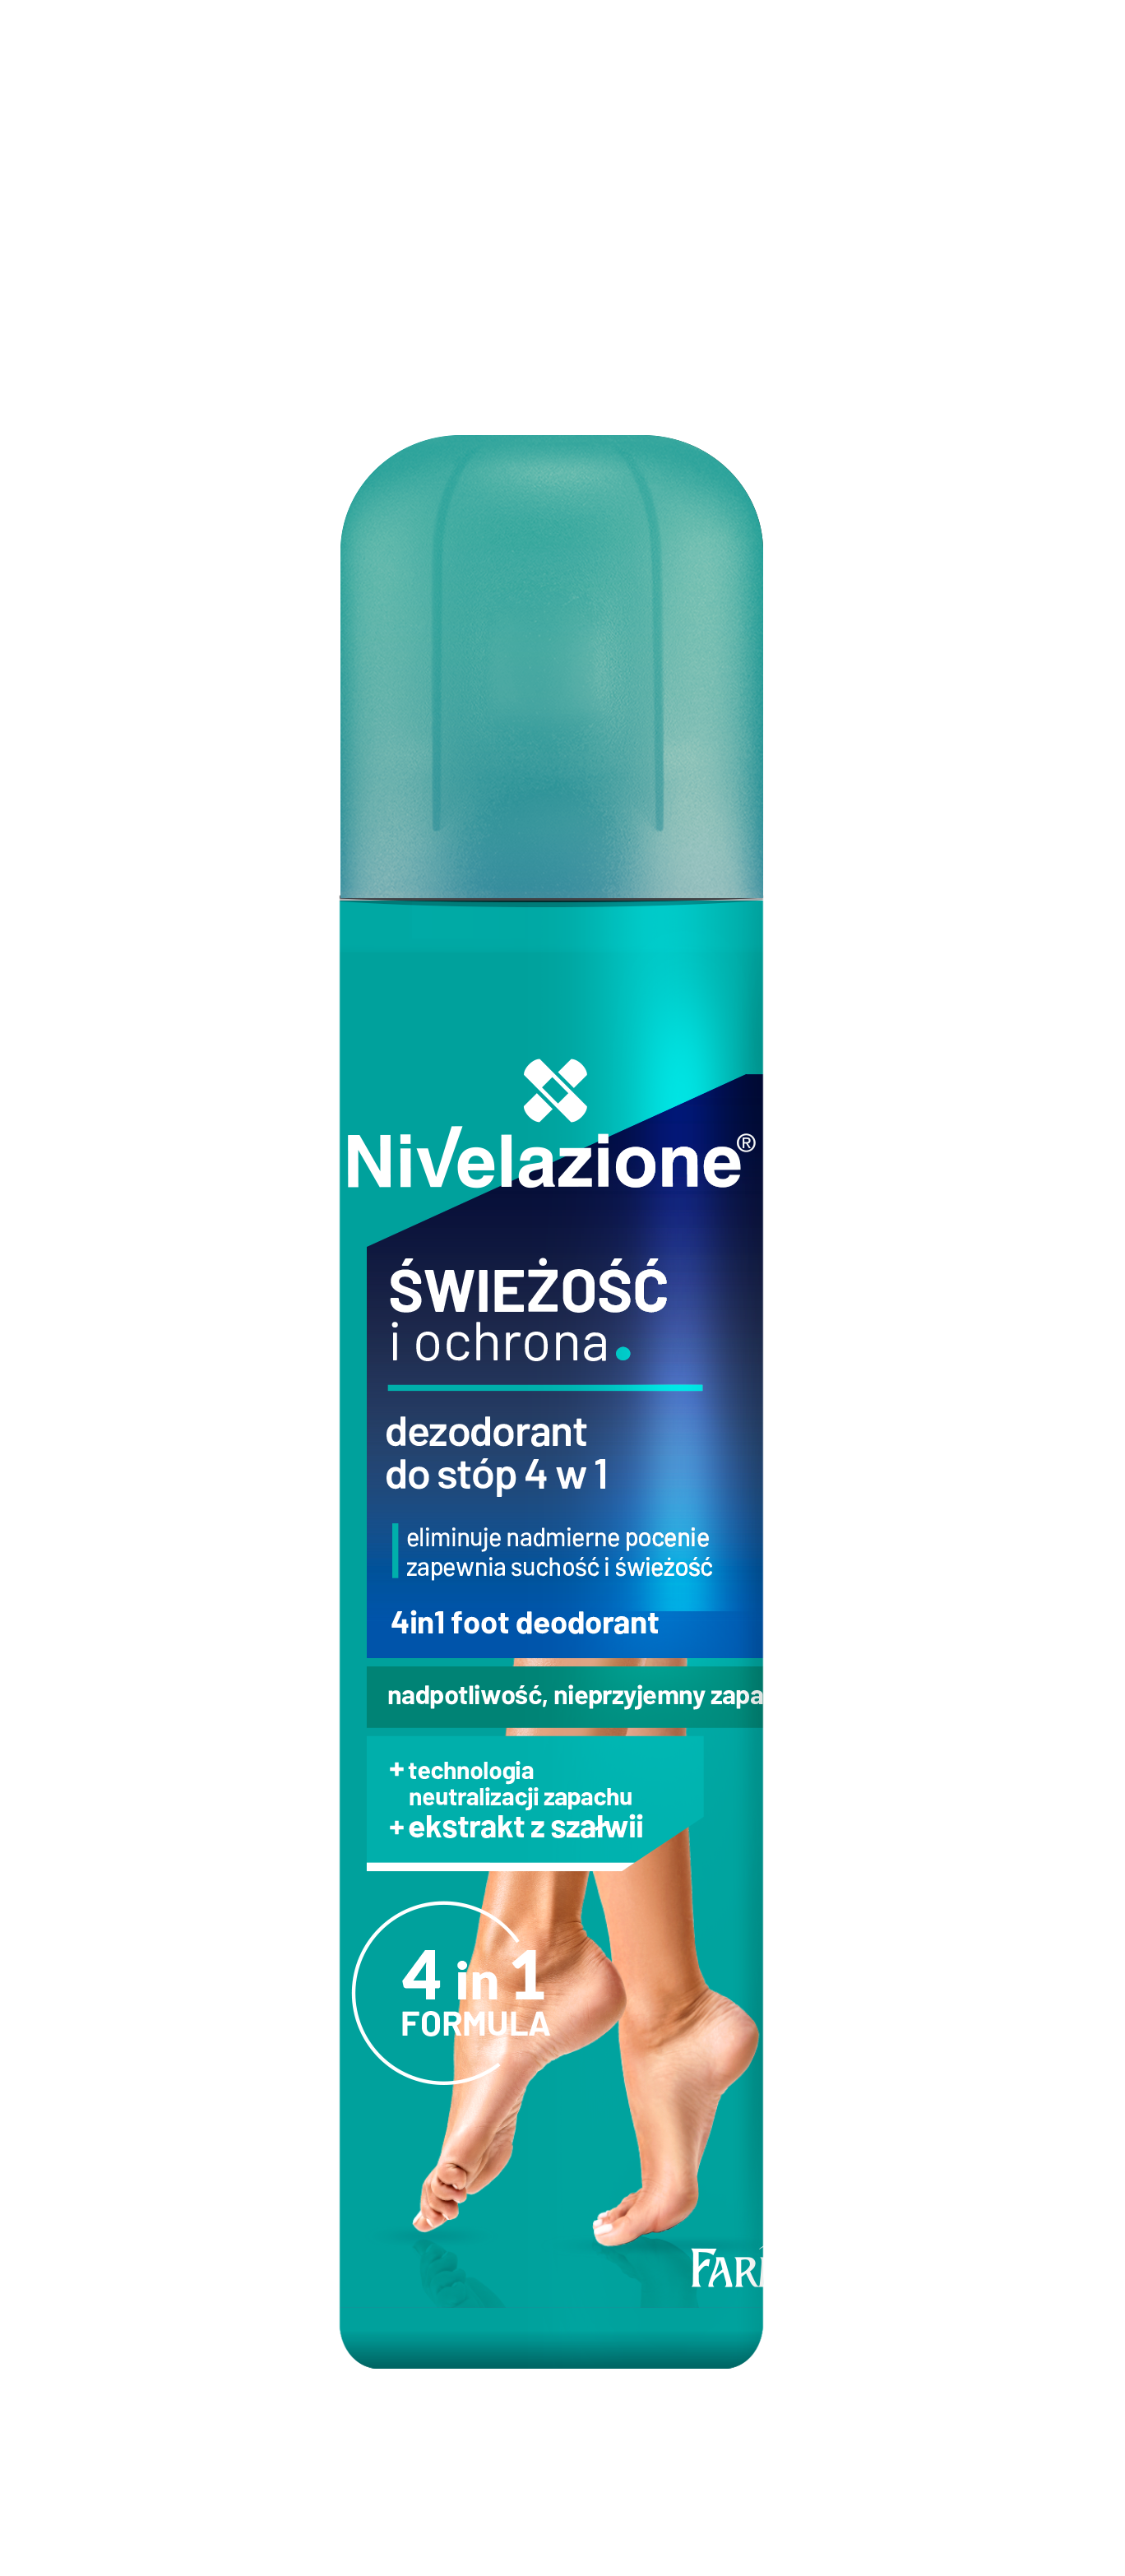 Nivelazione_dezodorant do stop4w1_swieżość i ochrona_180ml